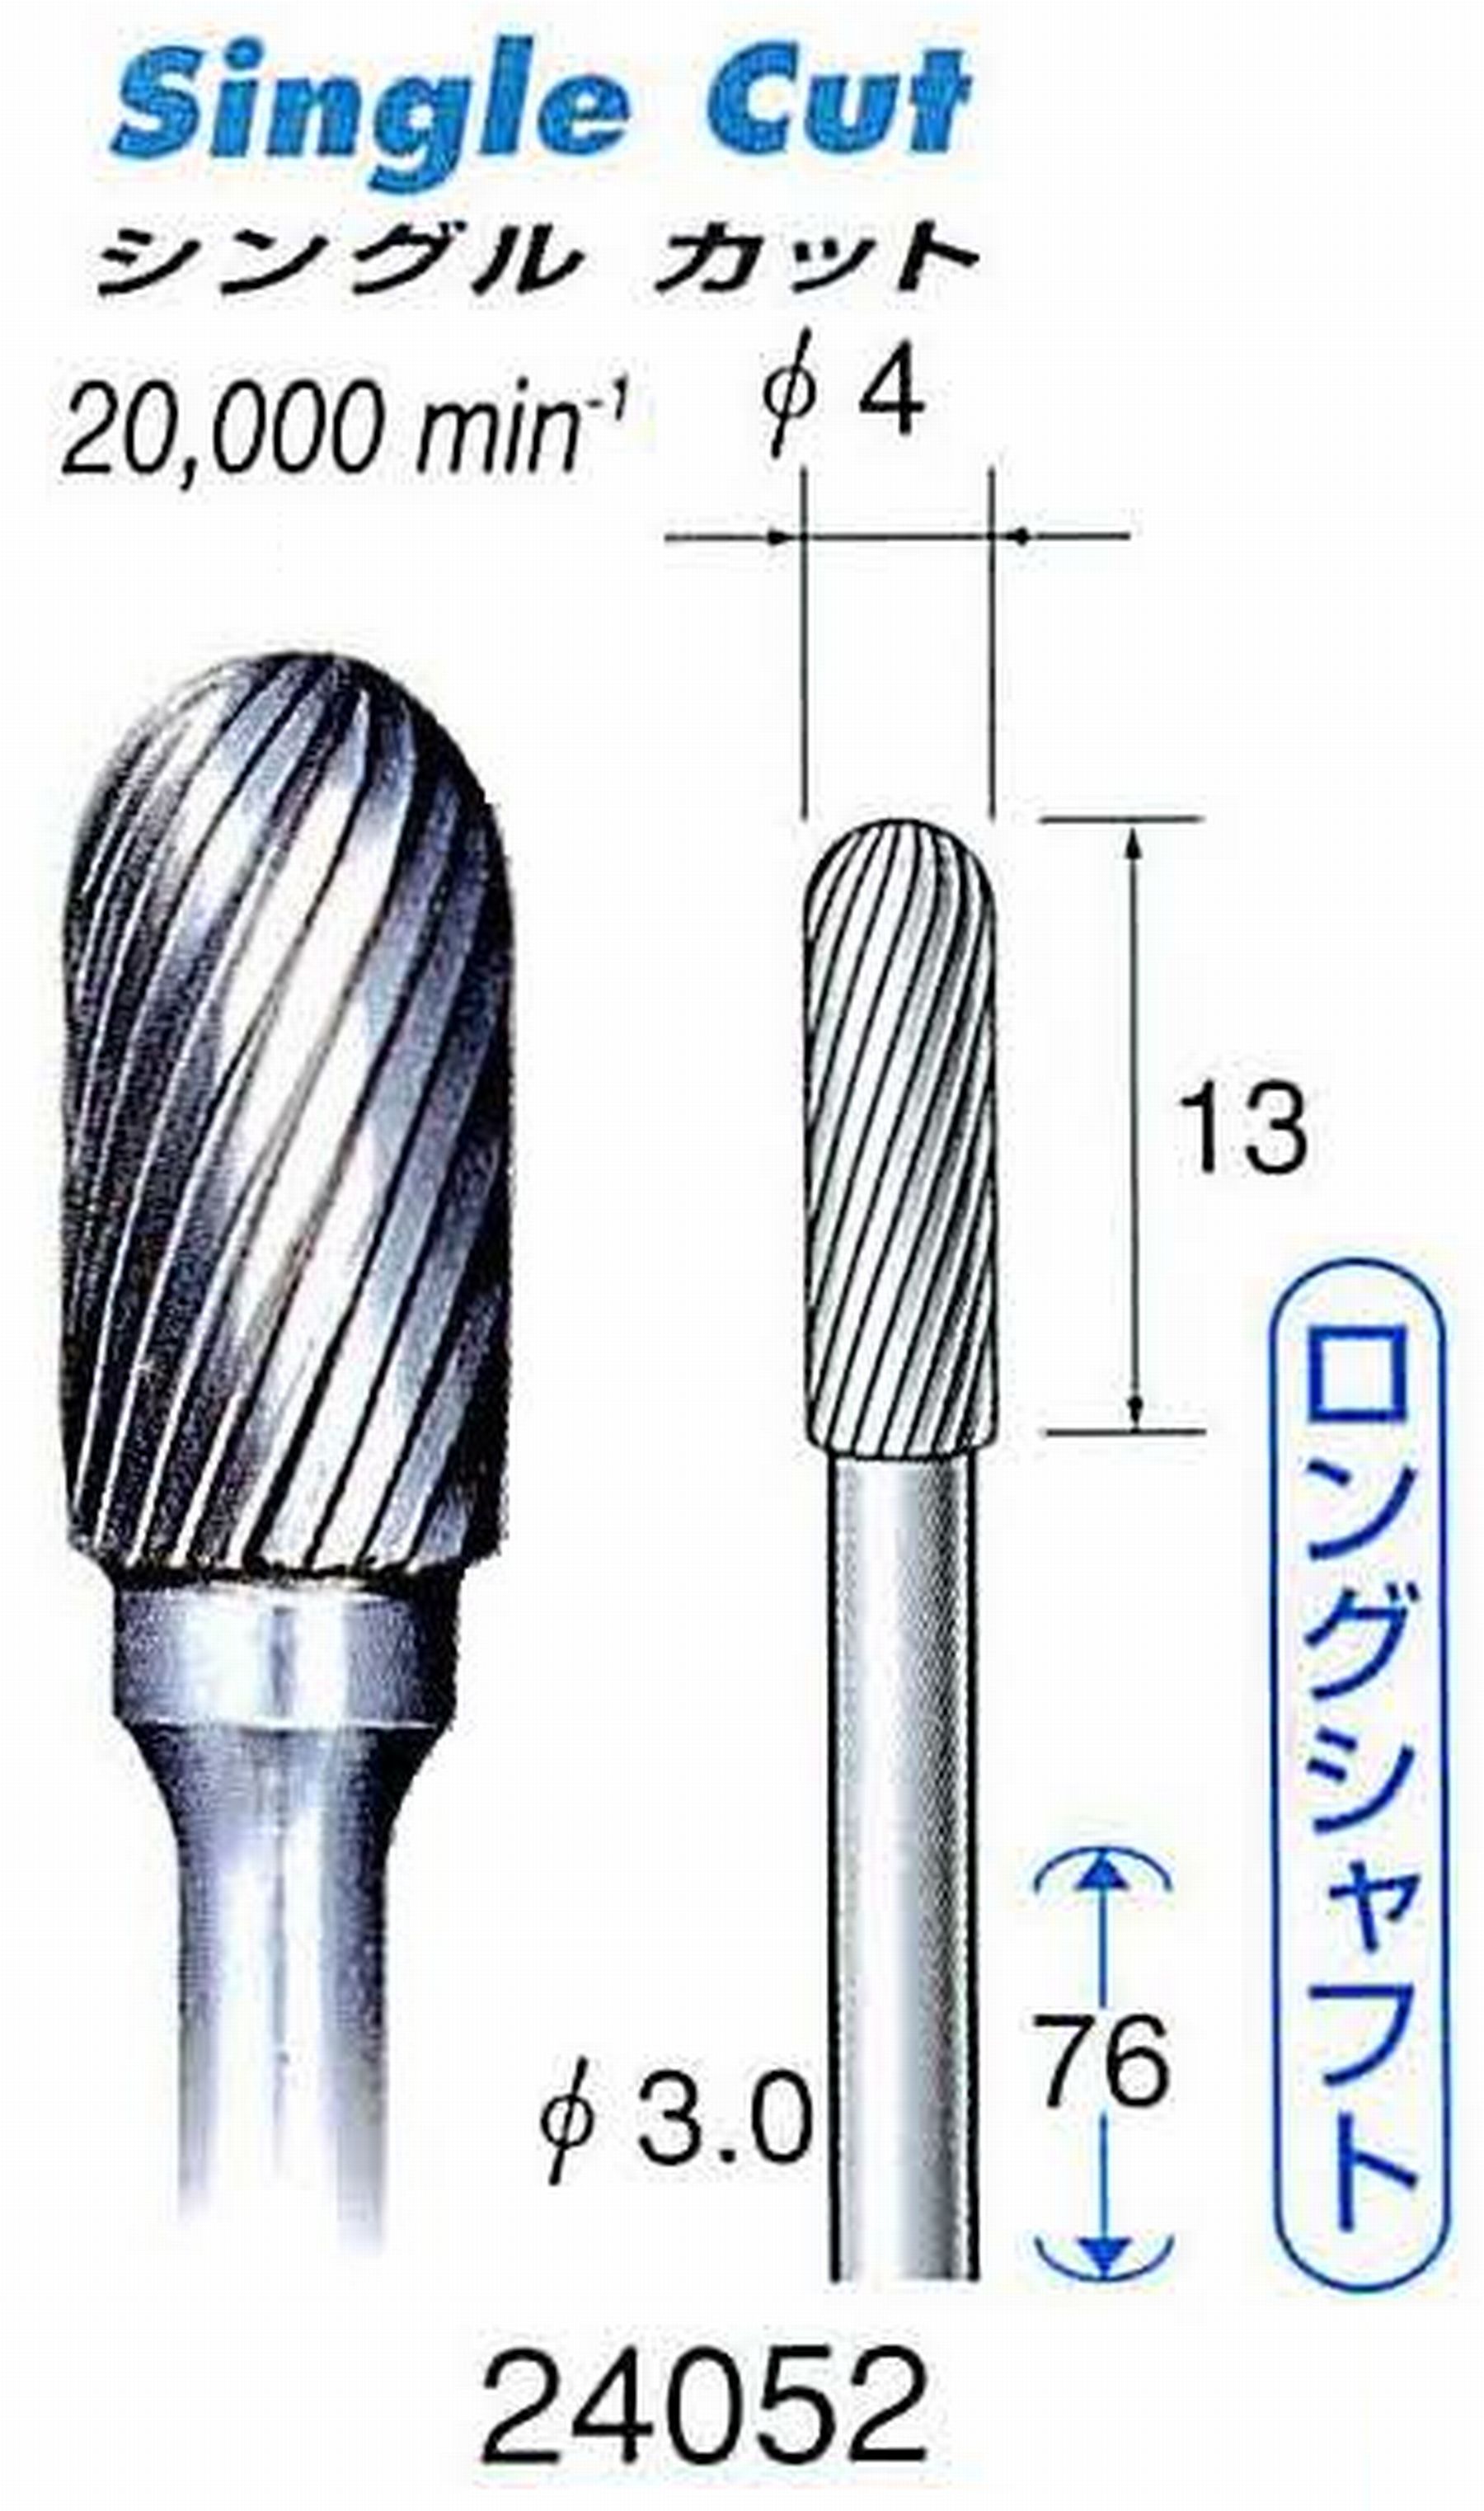 ナカニシ/NAKANISHI 超硬カッター(ロングシャフト) 軸径(シャンク)φ3.0mm 24052